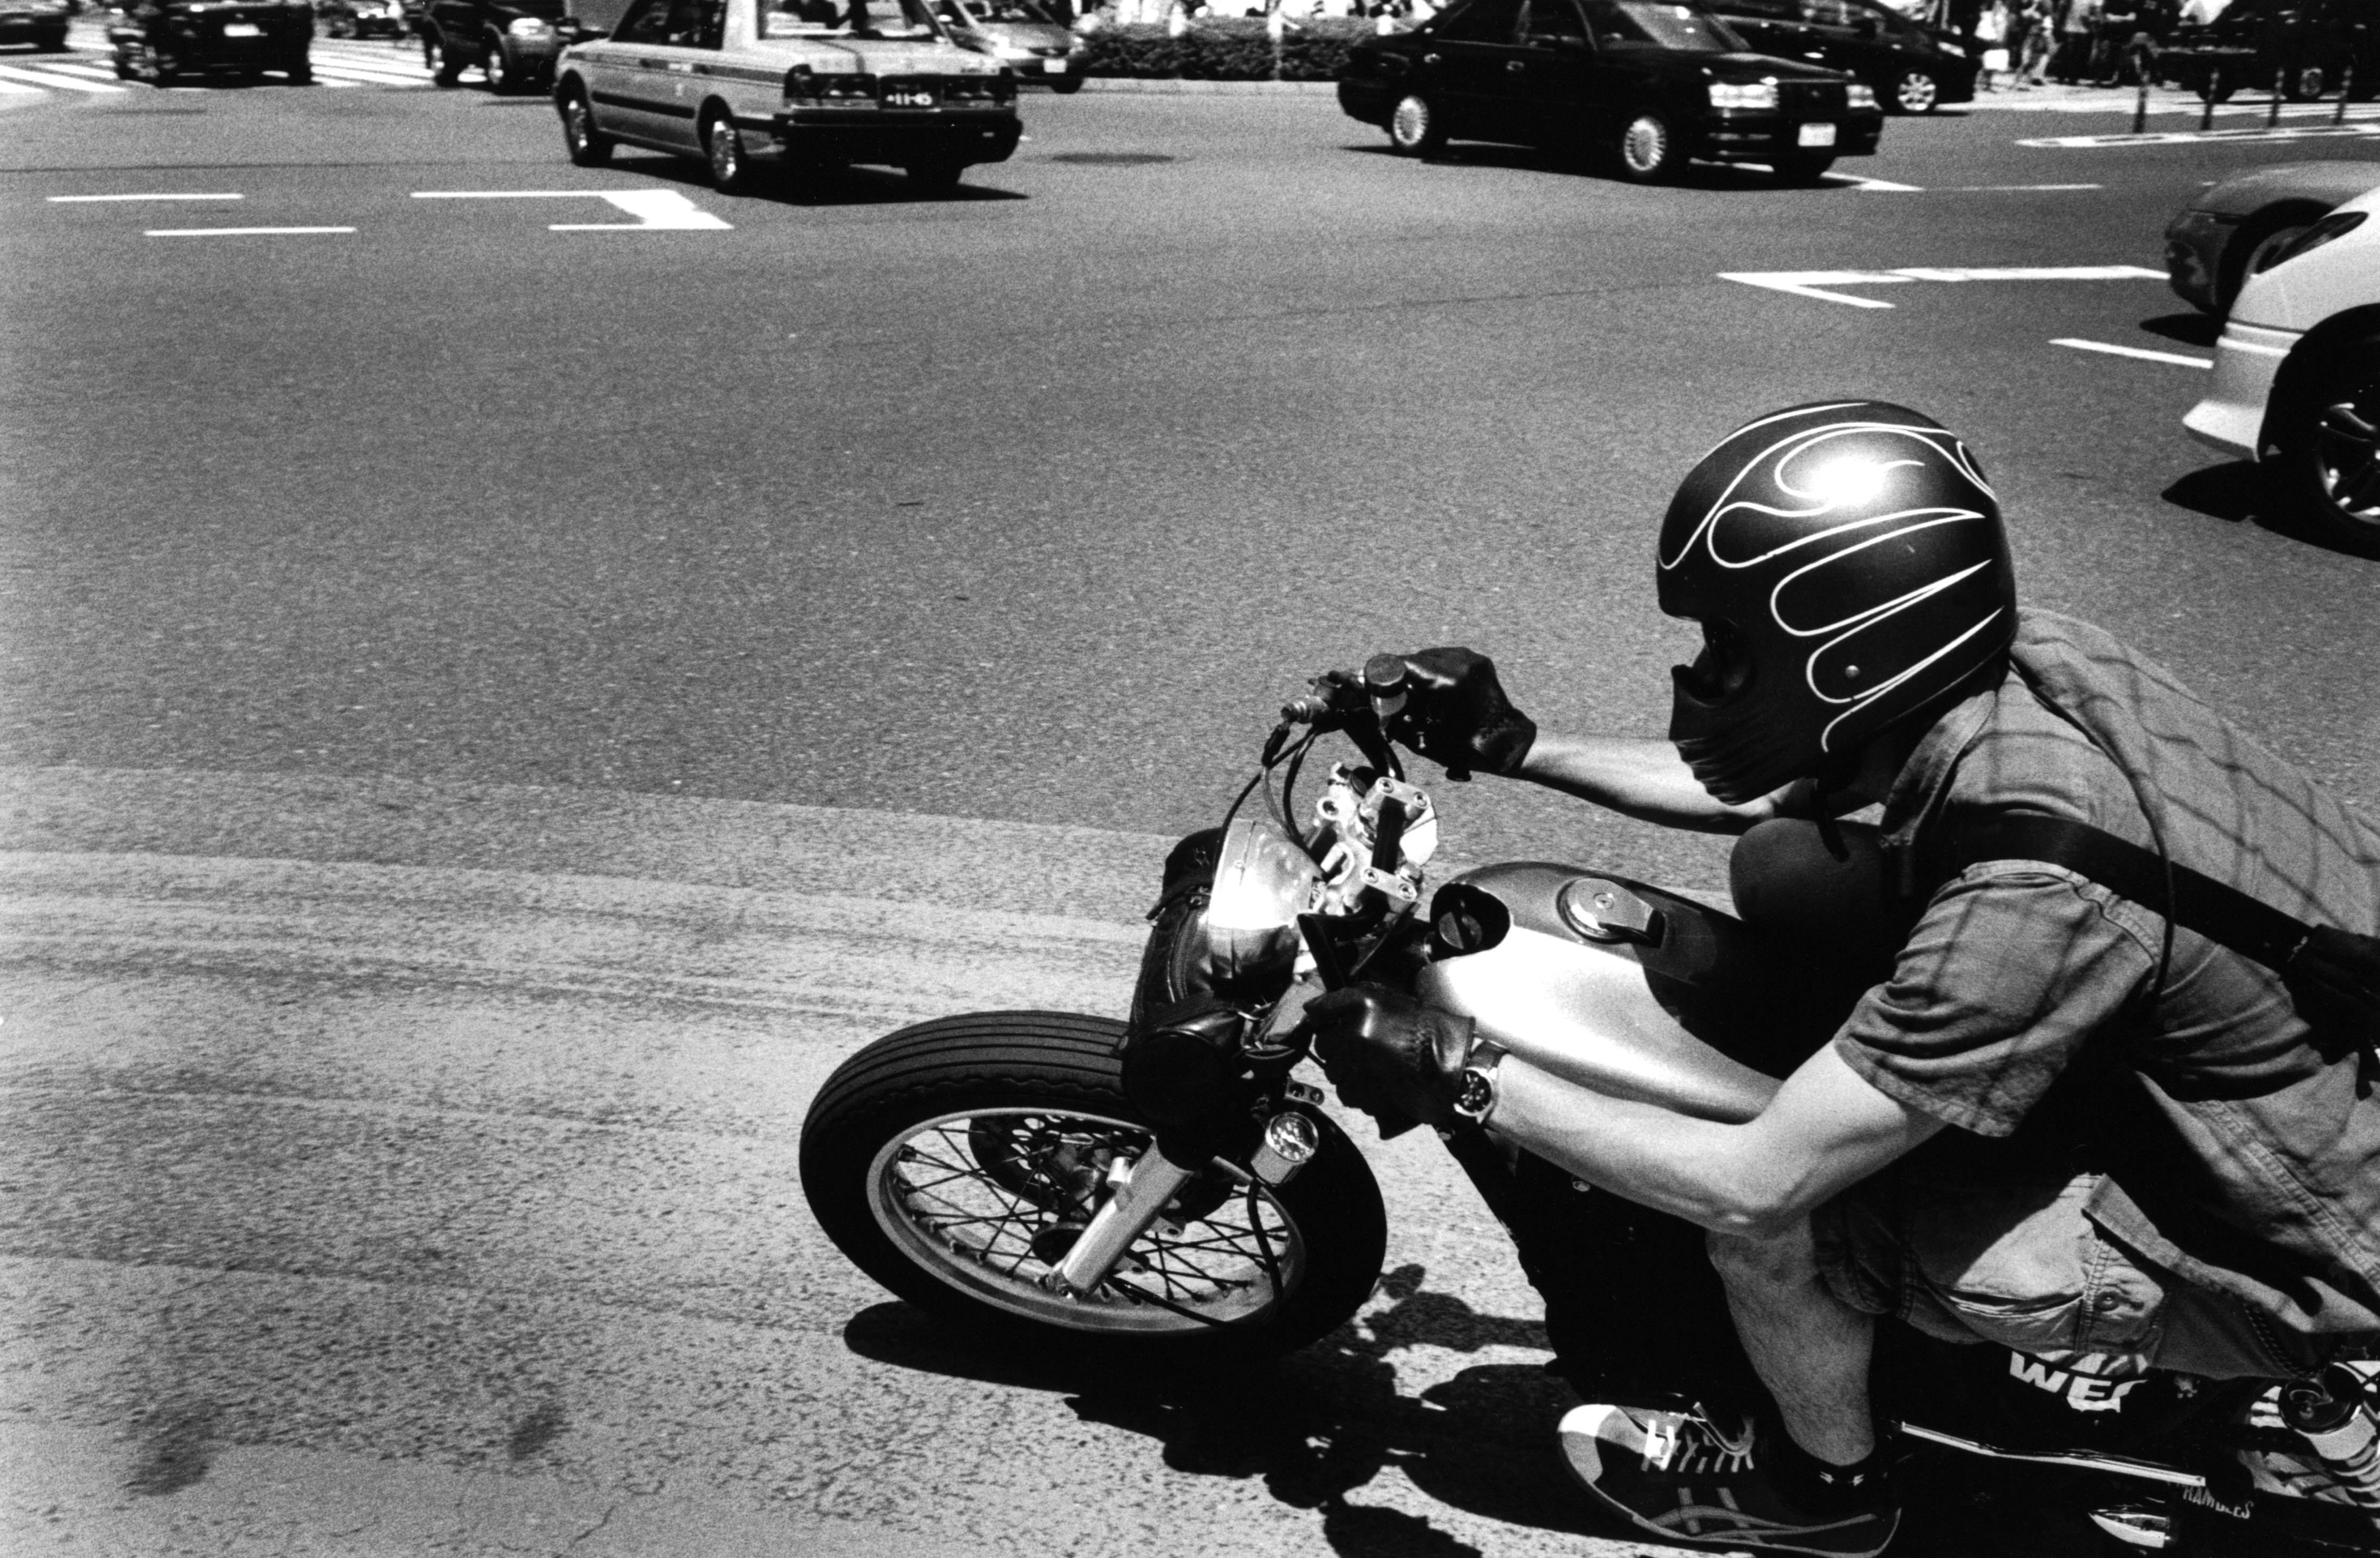 2014年、表参道。交差点でバイクの排気音が聴こえてきたら恋の予感。